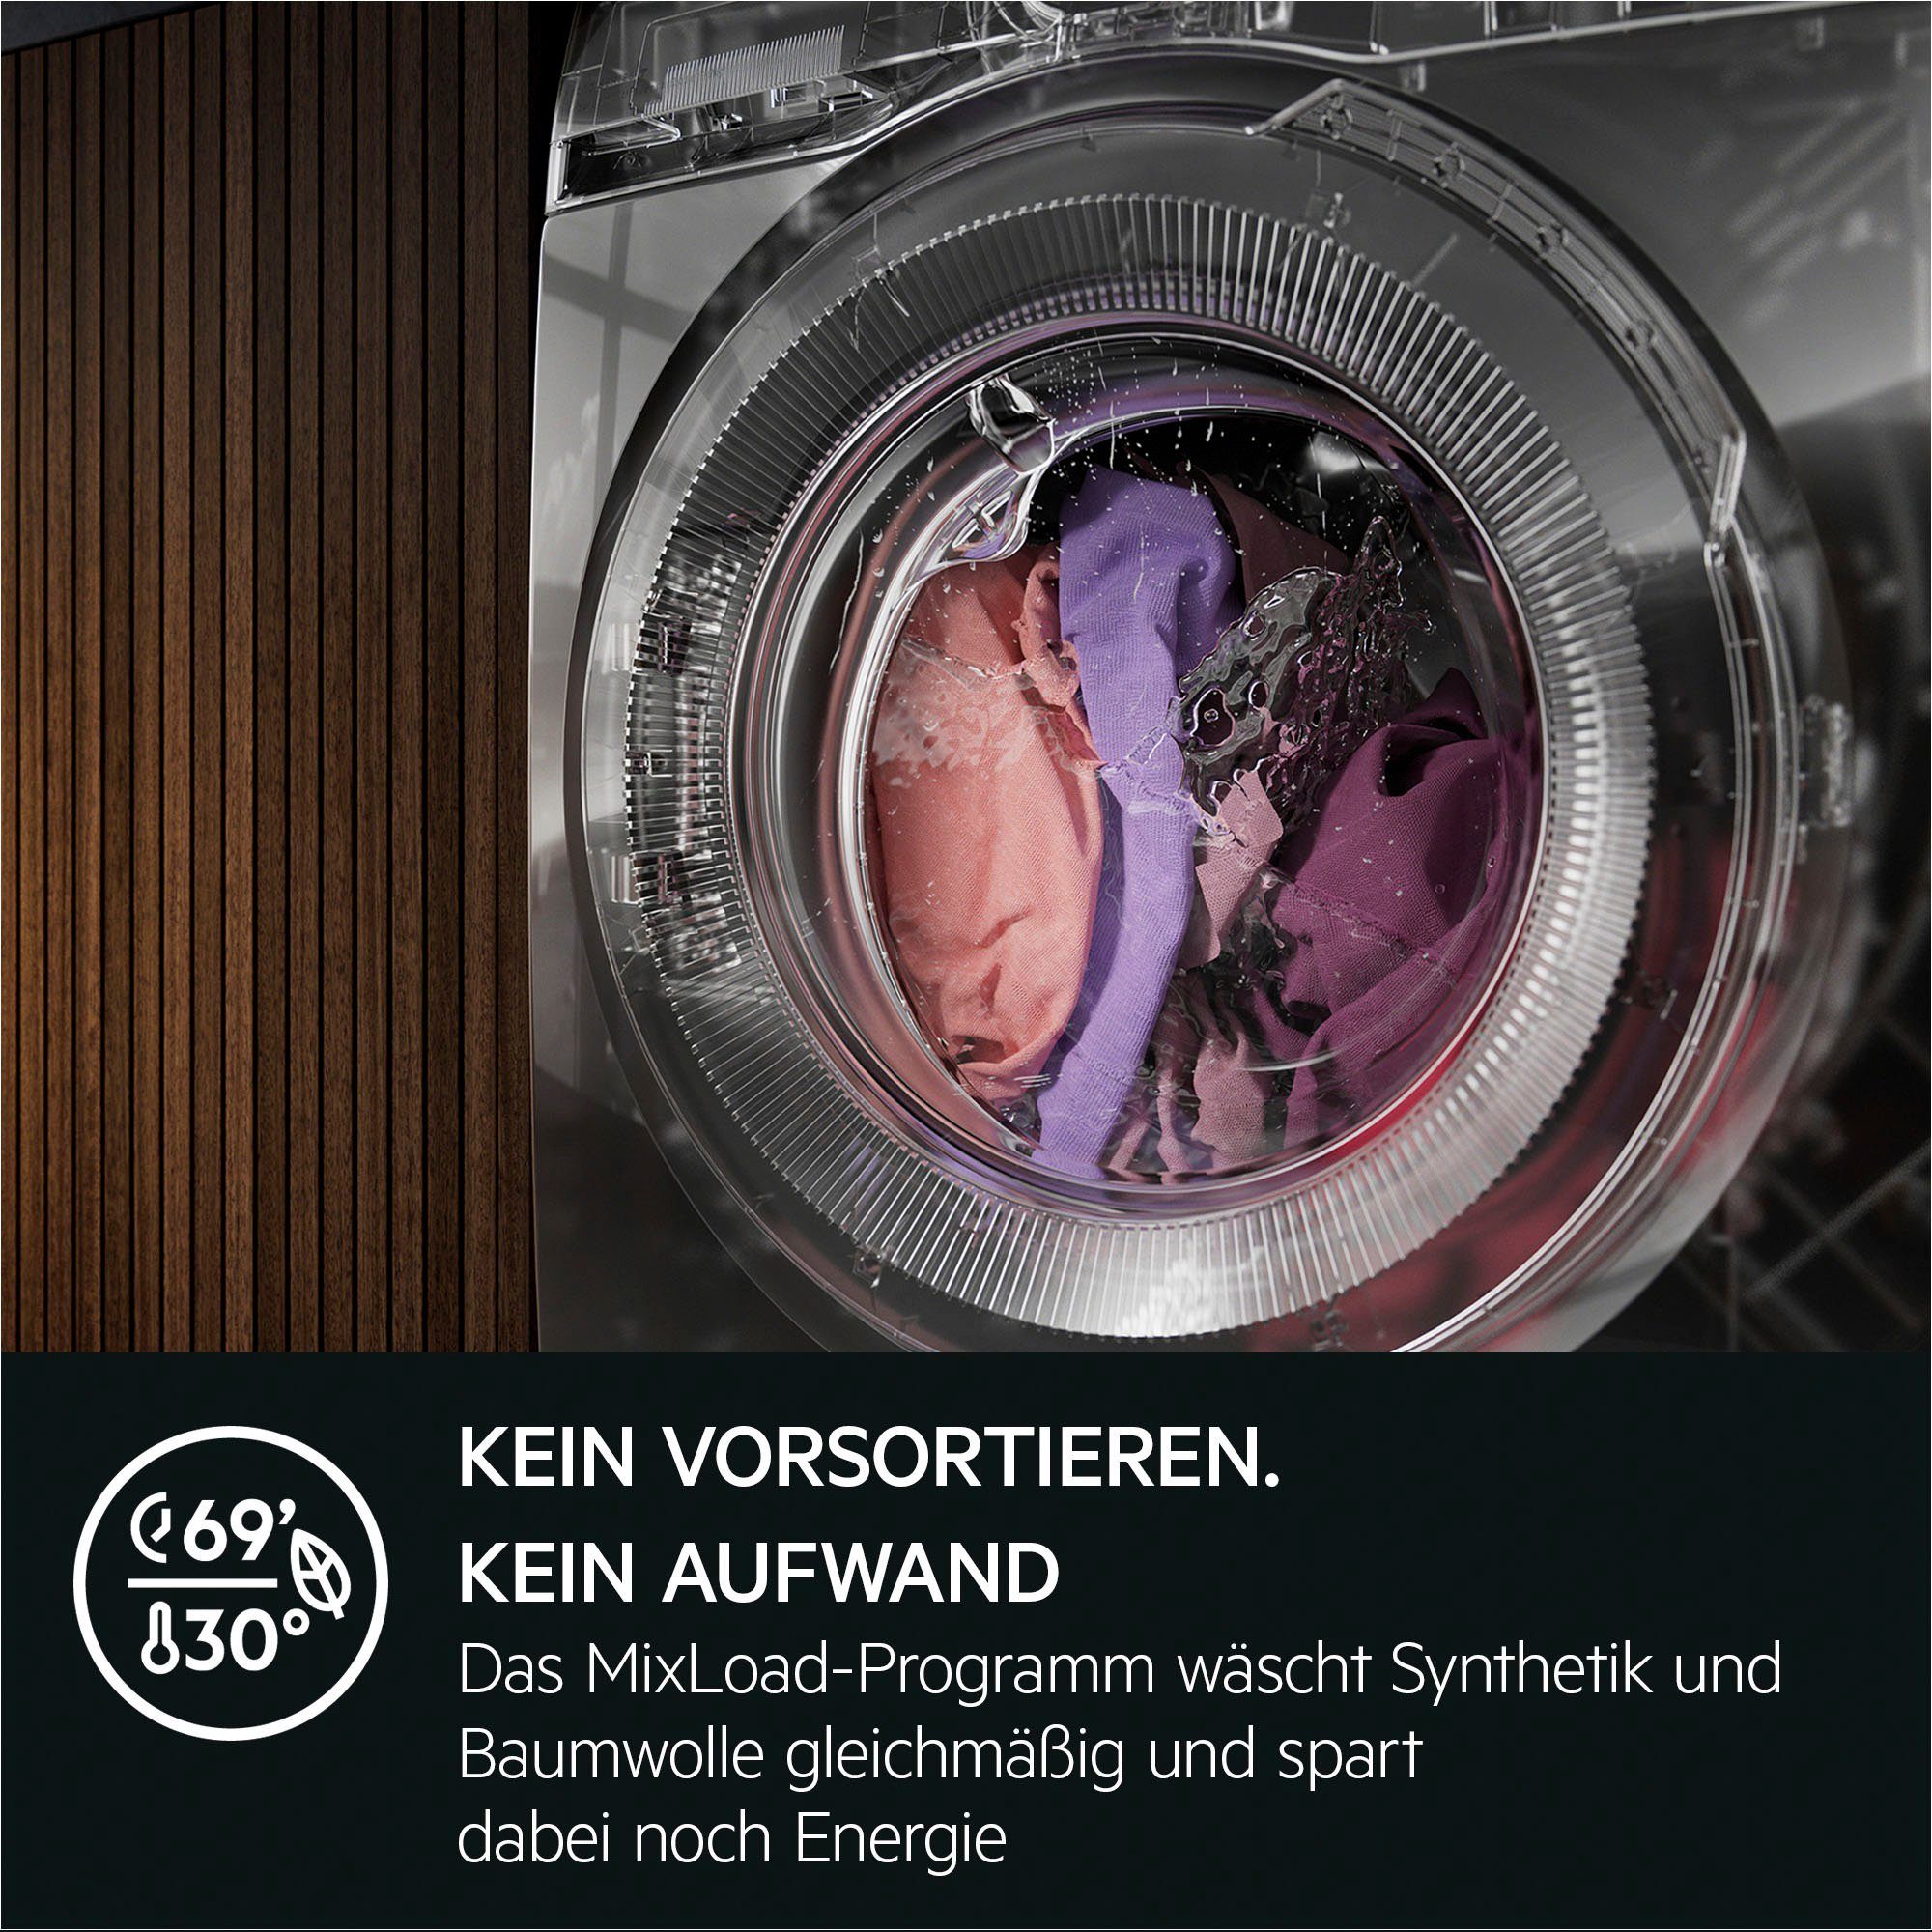 AEG Waschmaschine kg, Dampf-Programm weniger 7000 - 8 für U/min, 96 LR7G60480, ProSteam 1400 Wasserverbrauch 